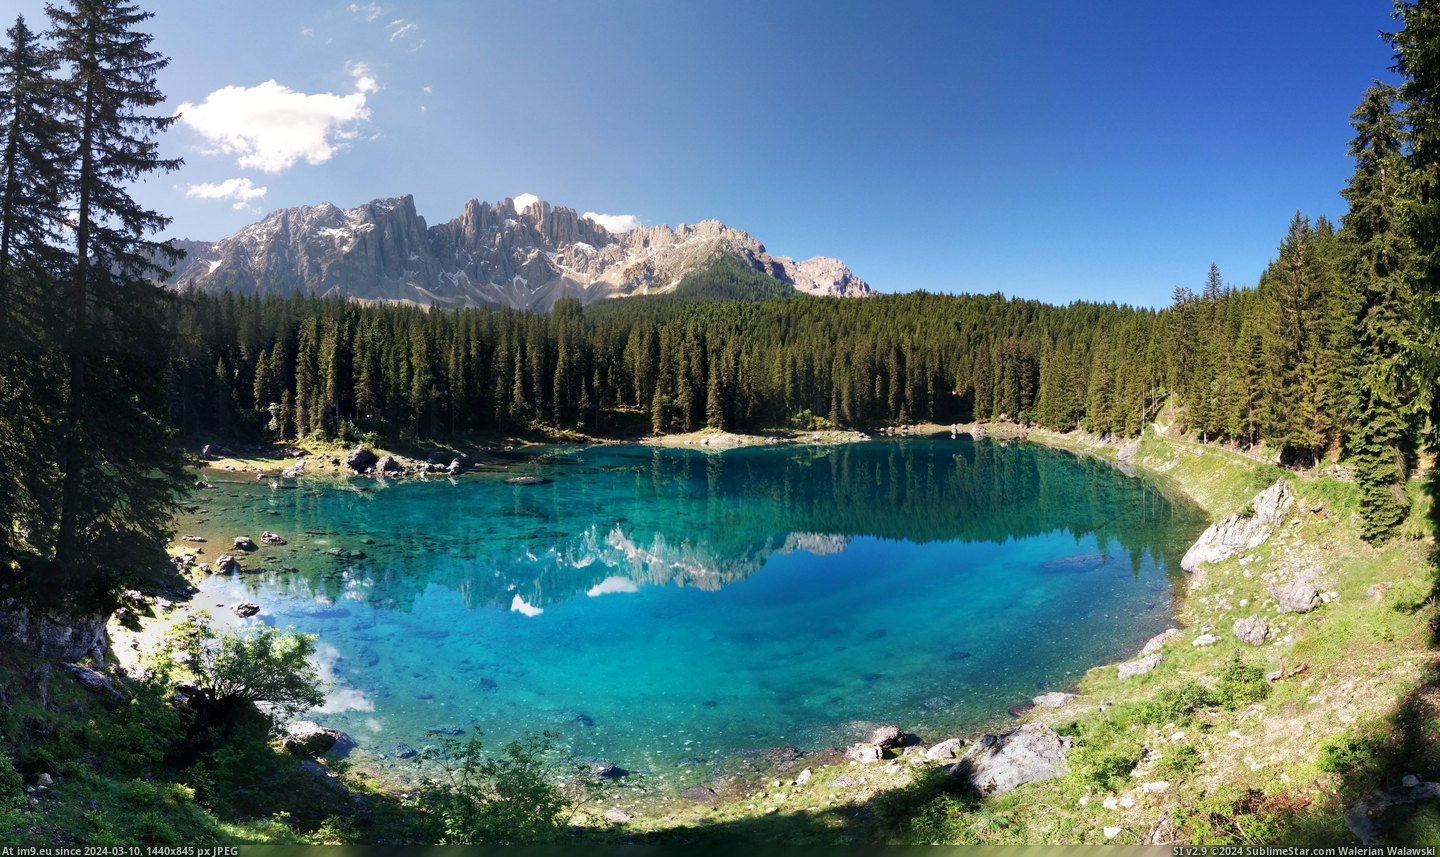  #Lago  [Earthporn] Lago di Carezza [7720x4540] Pic. (Bild von album My r/EARTHPORN favs))